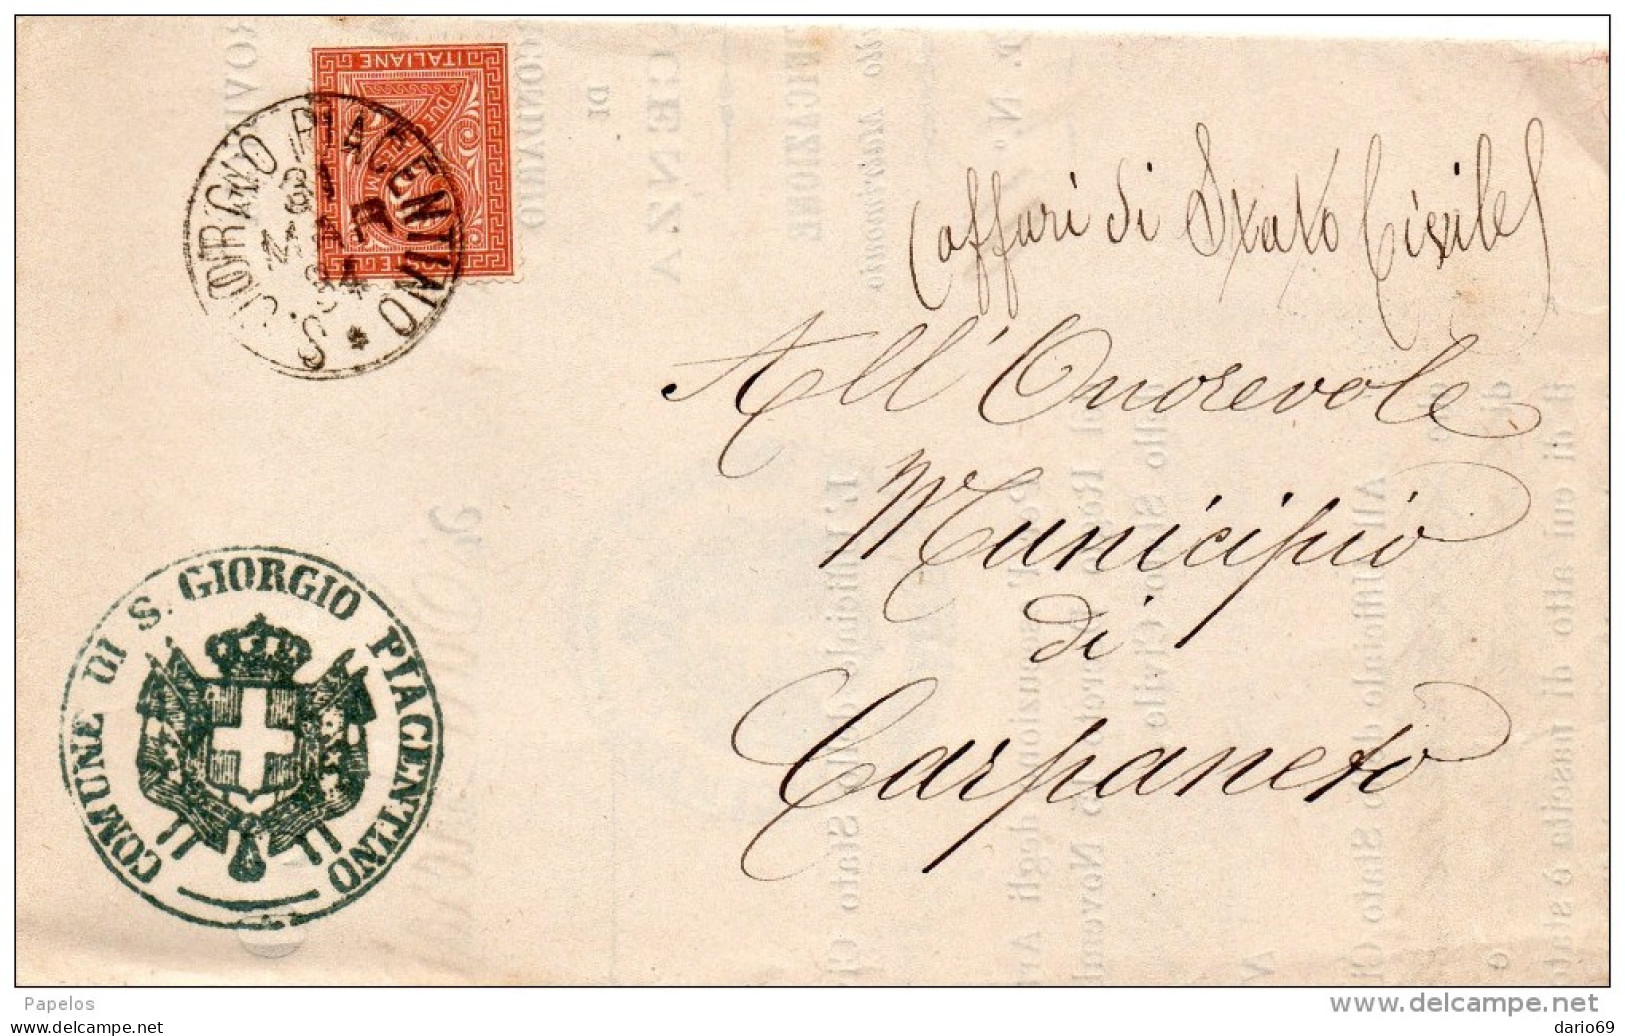 1884  LETTERA CON ANNULLO S.GIORGIO PIACENTINO - Storia Postale